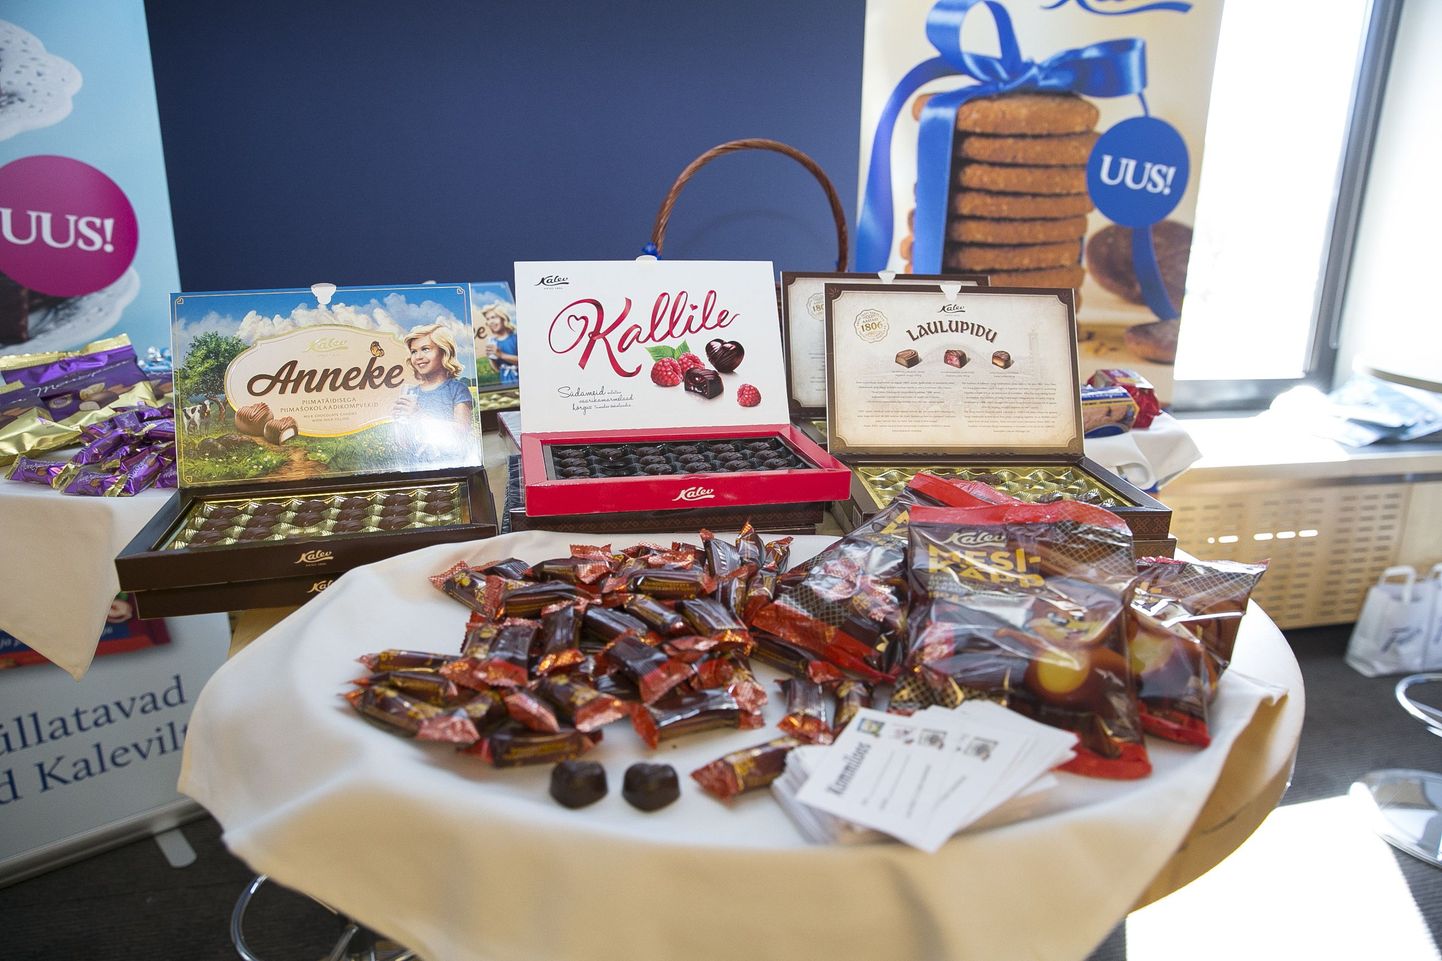 Eesti toiduainetööstuse aastakonverentsil kuulutati välja Eesti Parim Toiduaine konkursi võitjad.